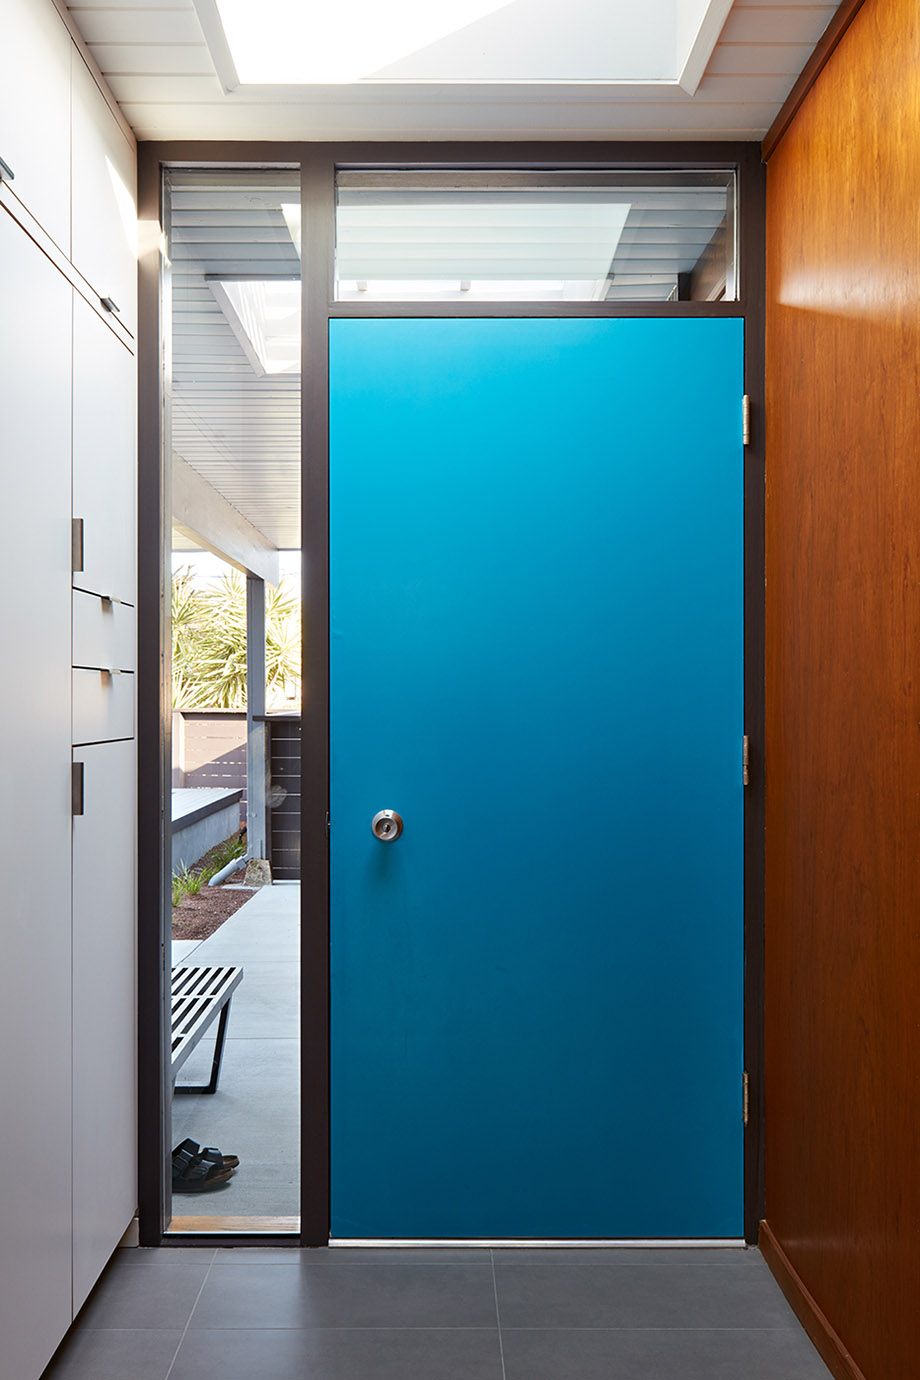 ประตูบ้านสีฟ้า